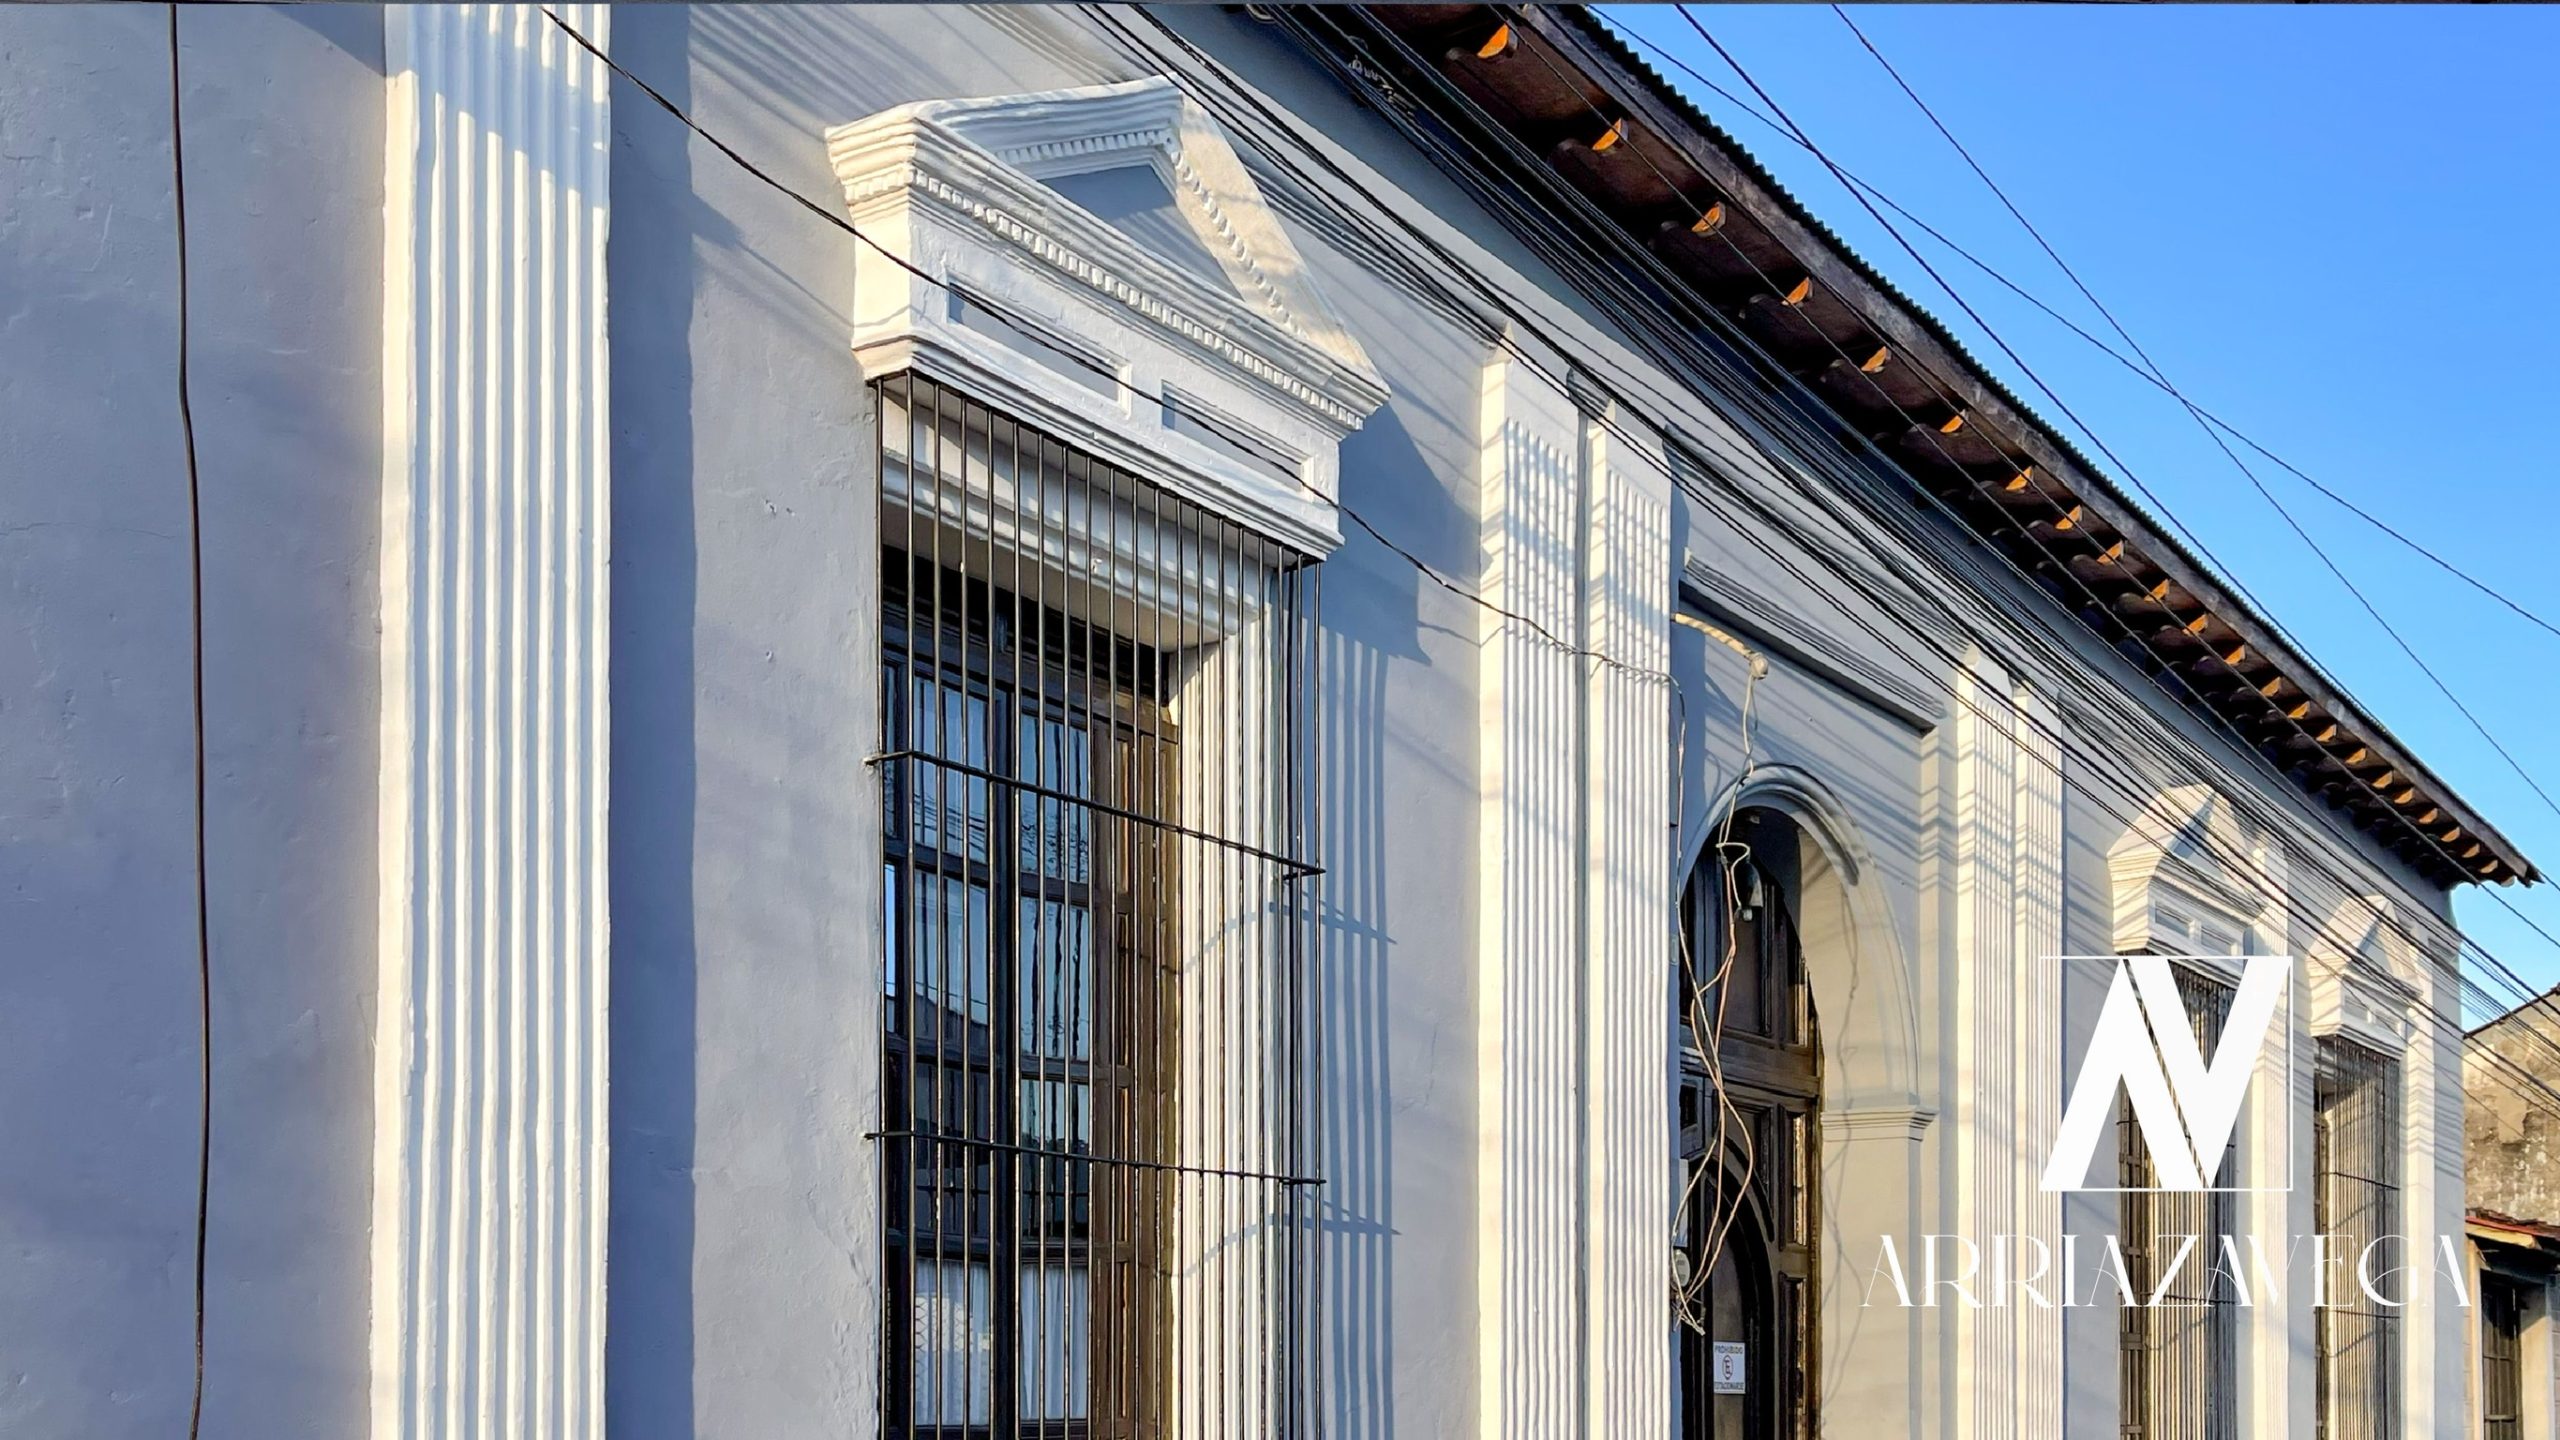 Magnífica casa para vivienda, oficina o comercio, en pleno corazón del sector financiero del casco histórico de Ahuachapán